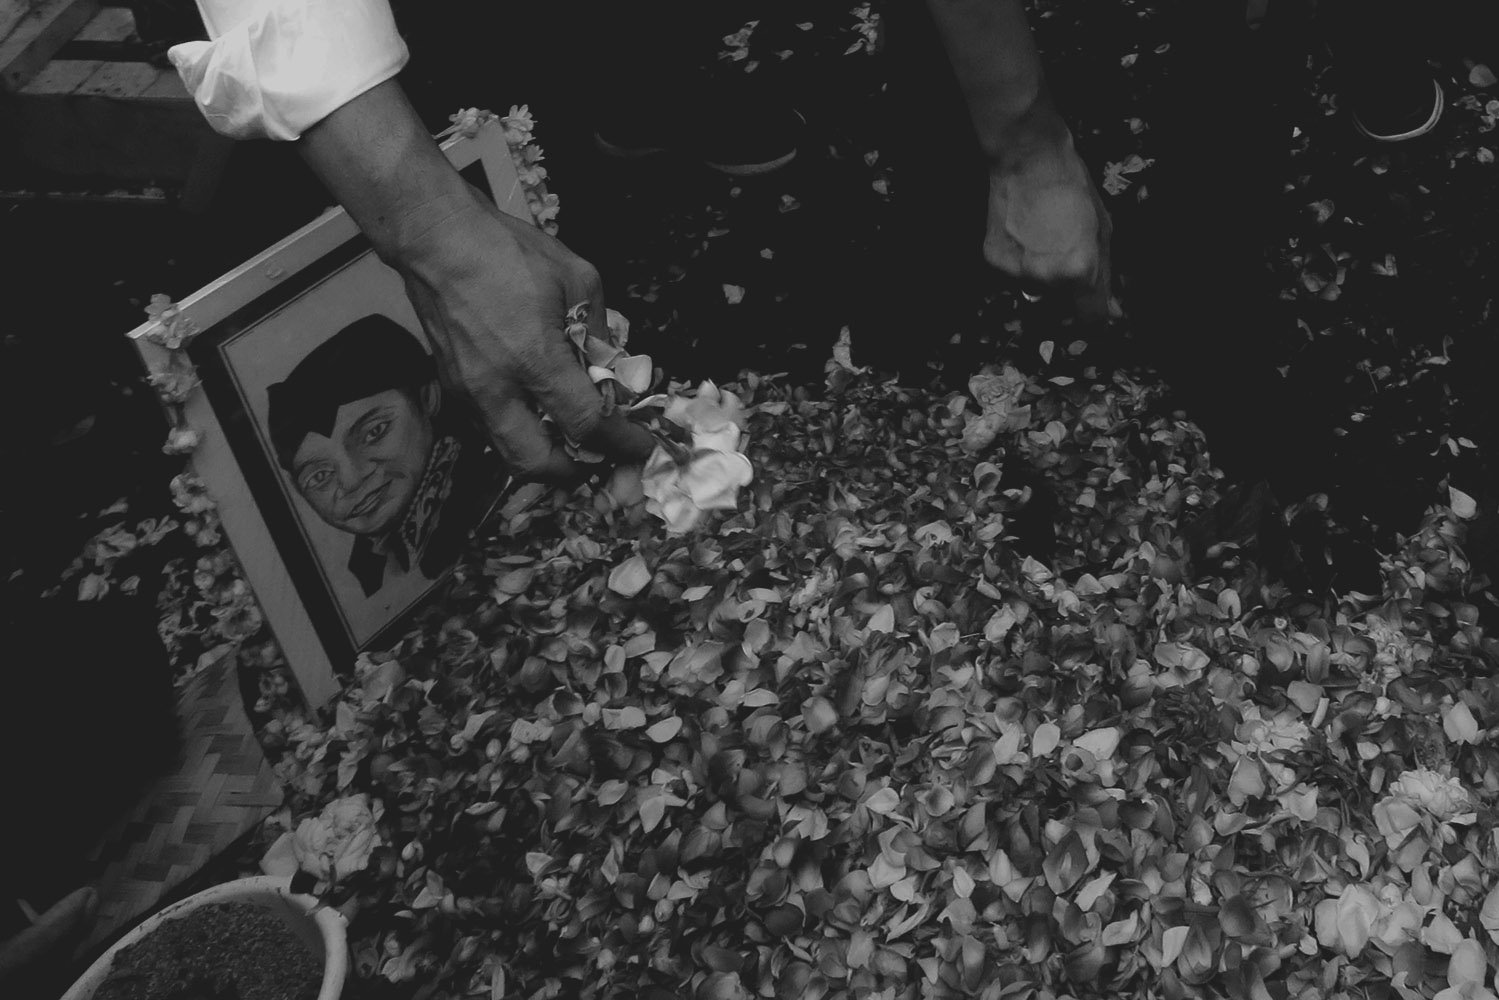 Kerabat menabur bunga di atas pusara almarhum penyanyi campursari Dionisius Prasetyo atau Didi Kempot sesuasi dimakamkan di Tempat Pemakaman Umum Desa Majasem, Ngawi, Jawa Timur, Selasa (5/5/2020). Didi Kempot meninggal di Solo, Jawa Tengah pada usia 53 tahun.

